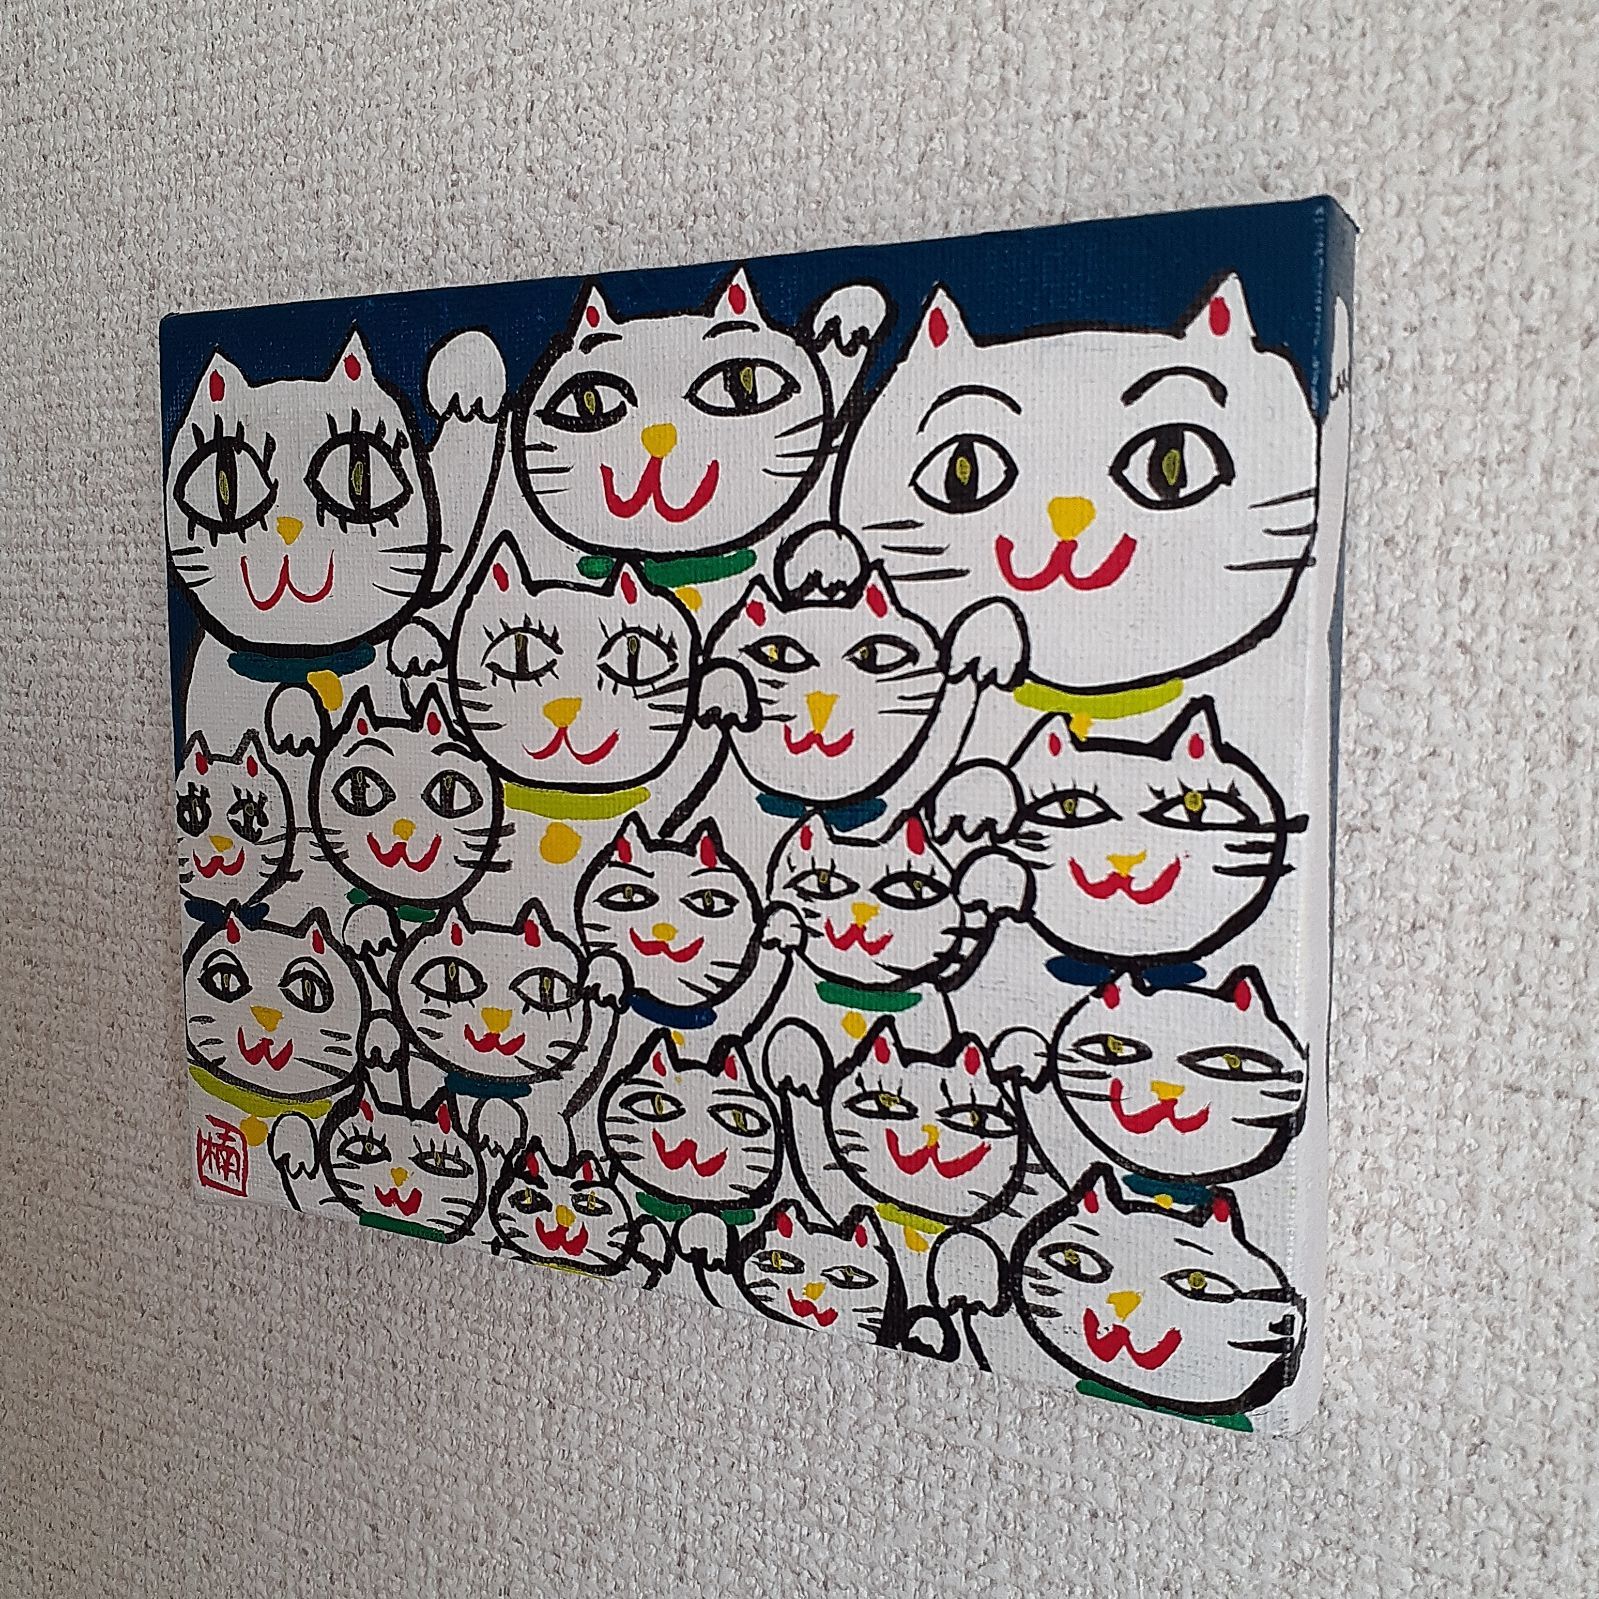 ハッピー開運招き猫 新、緑だらけのシリーズ 画家小楠アキコ作品